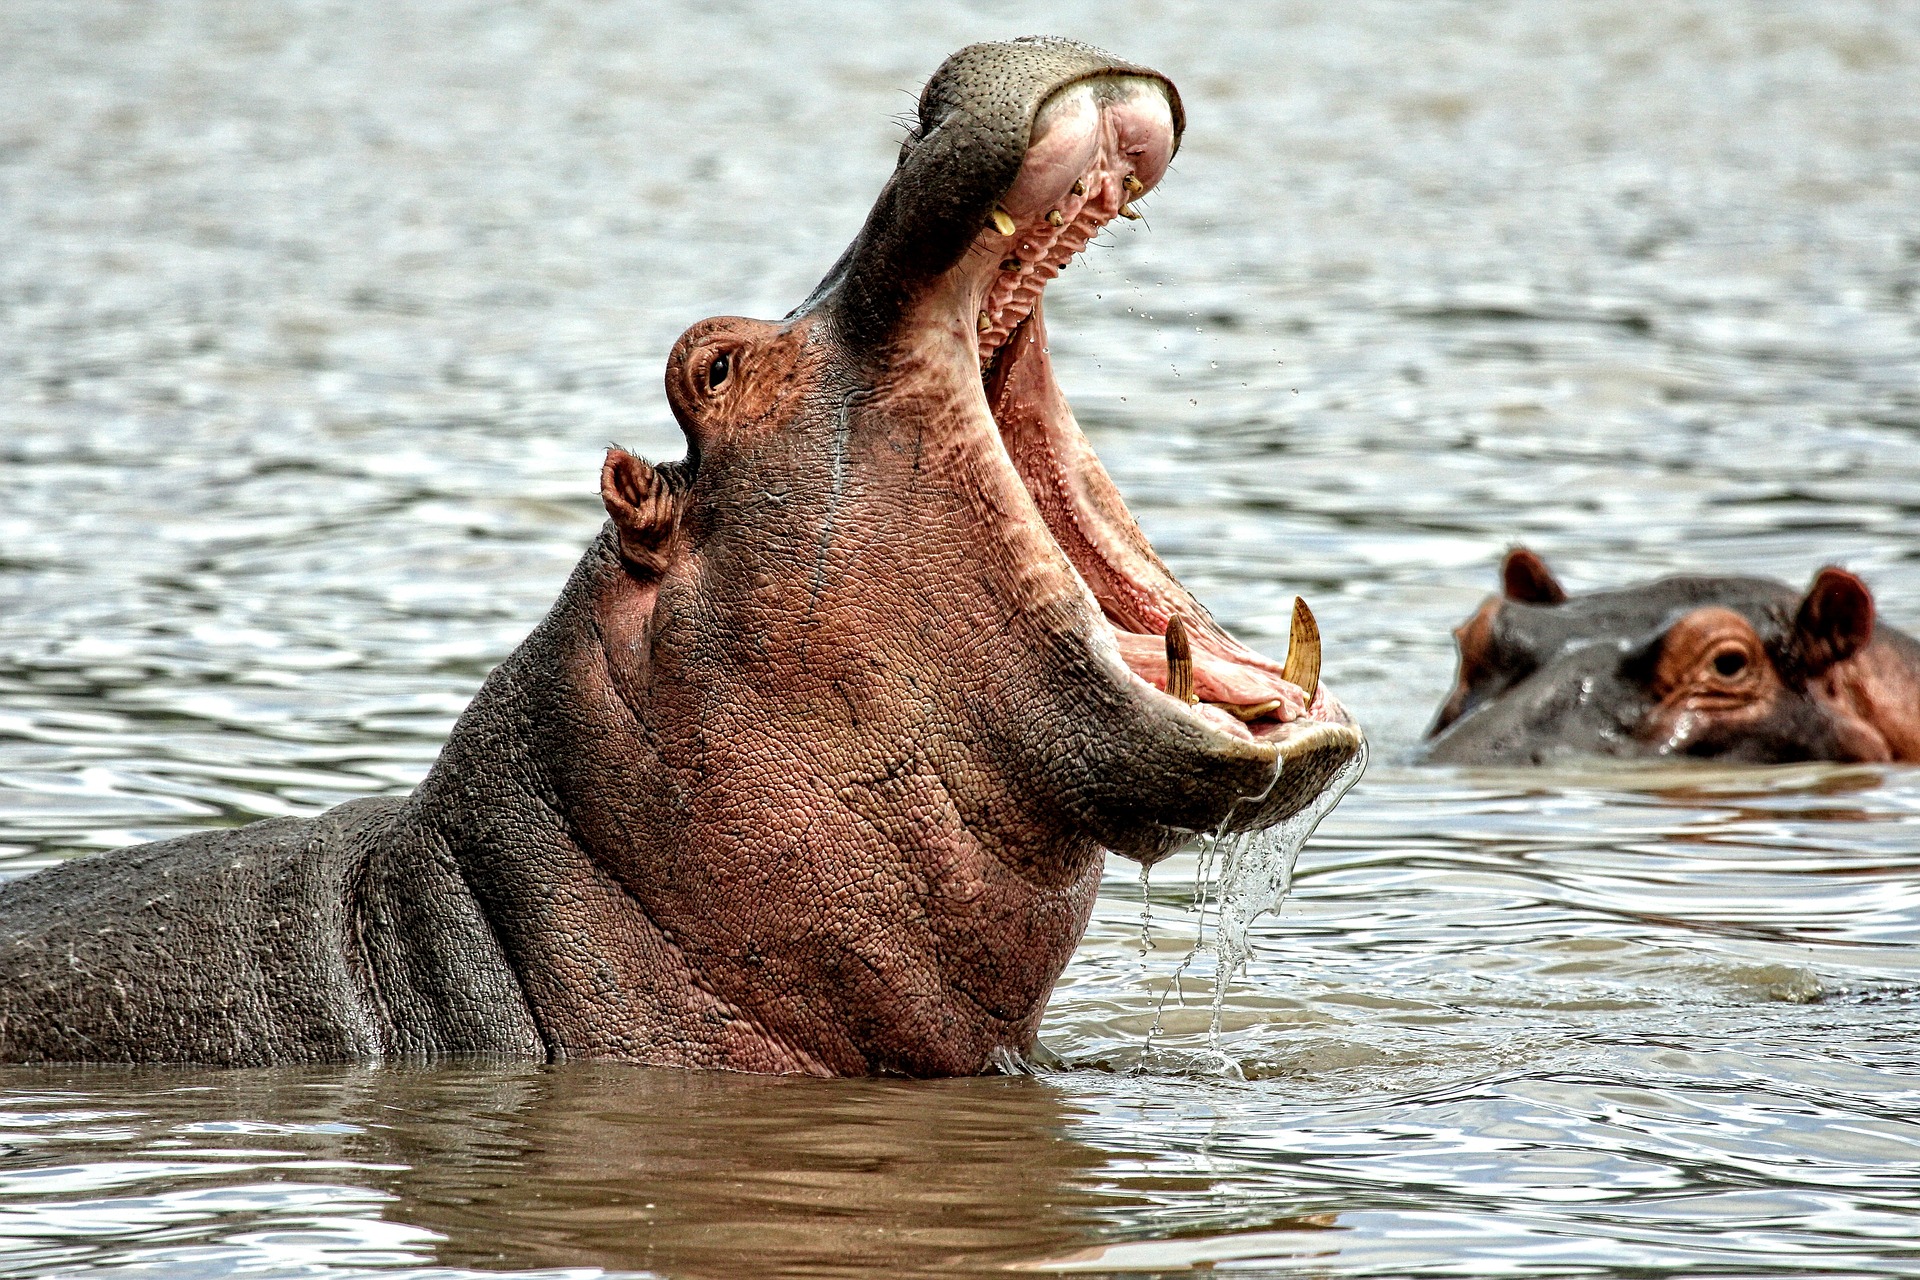 Imagen de referencia de un hipopótamo con la boca abierta